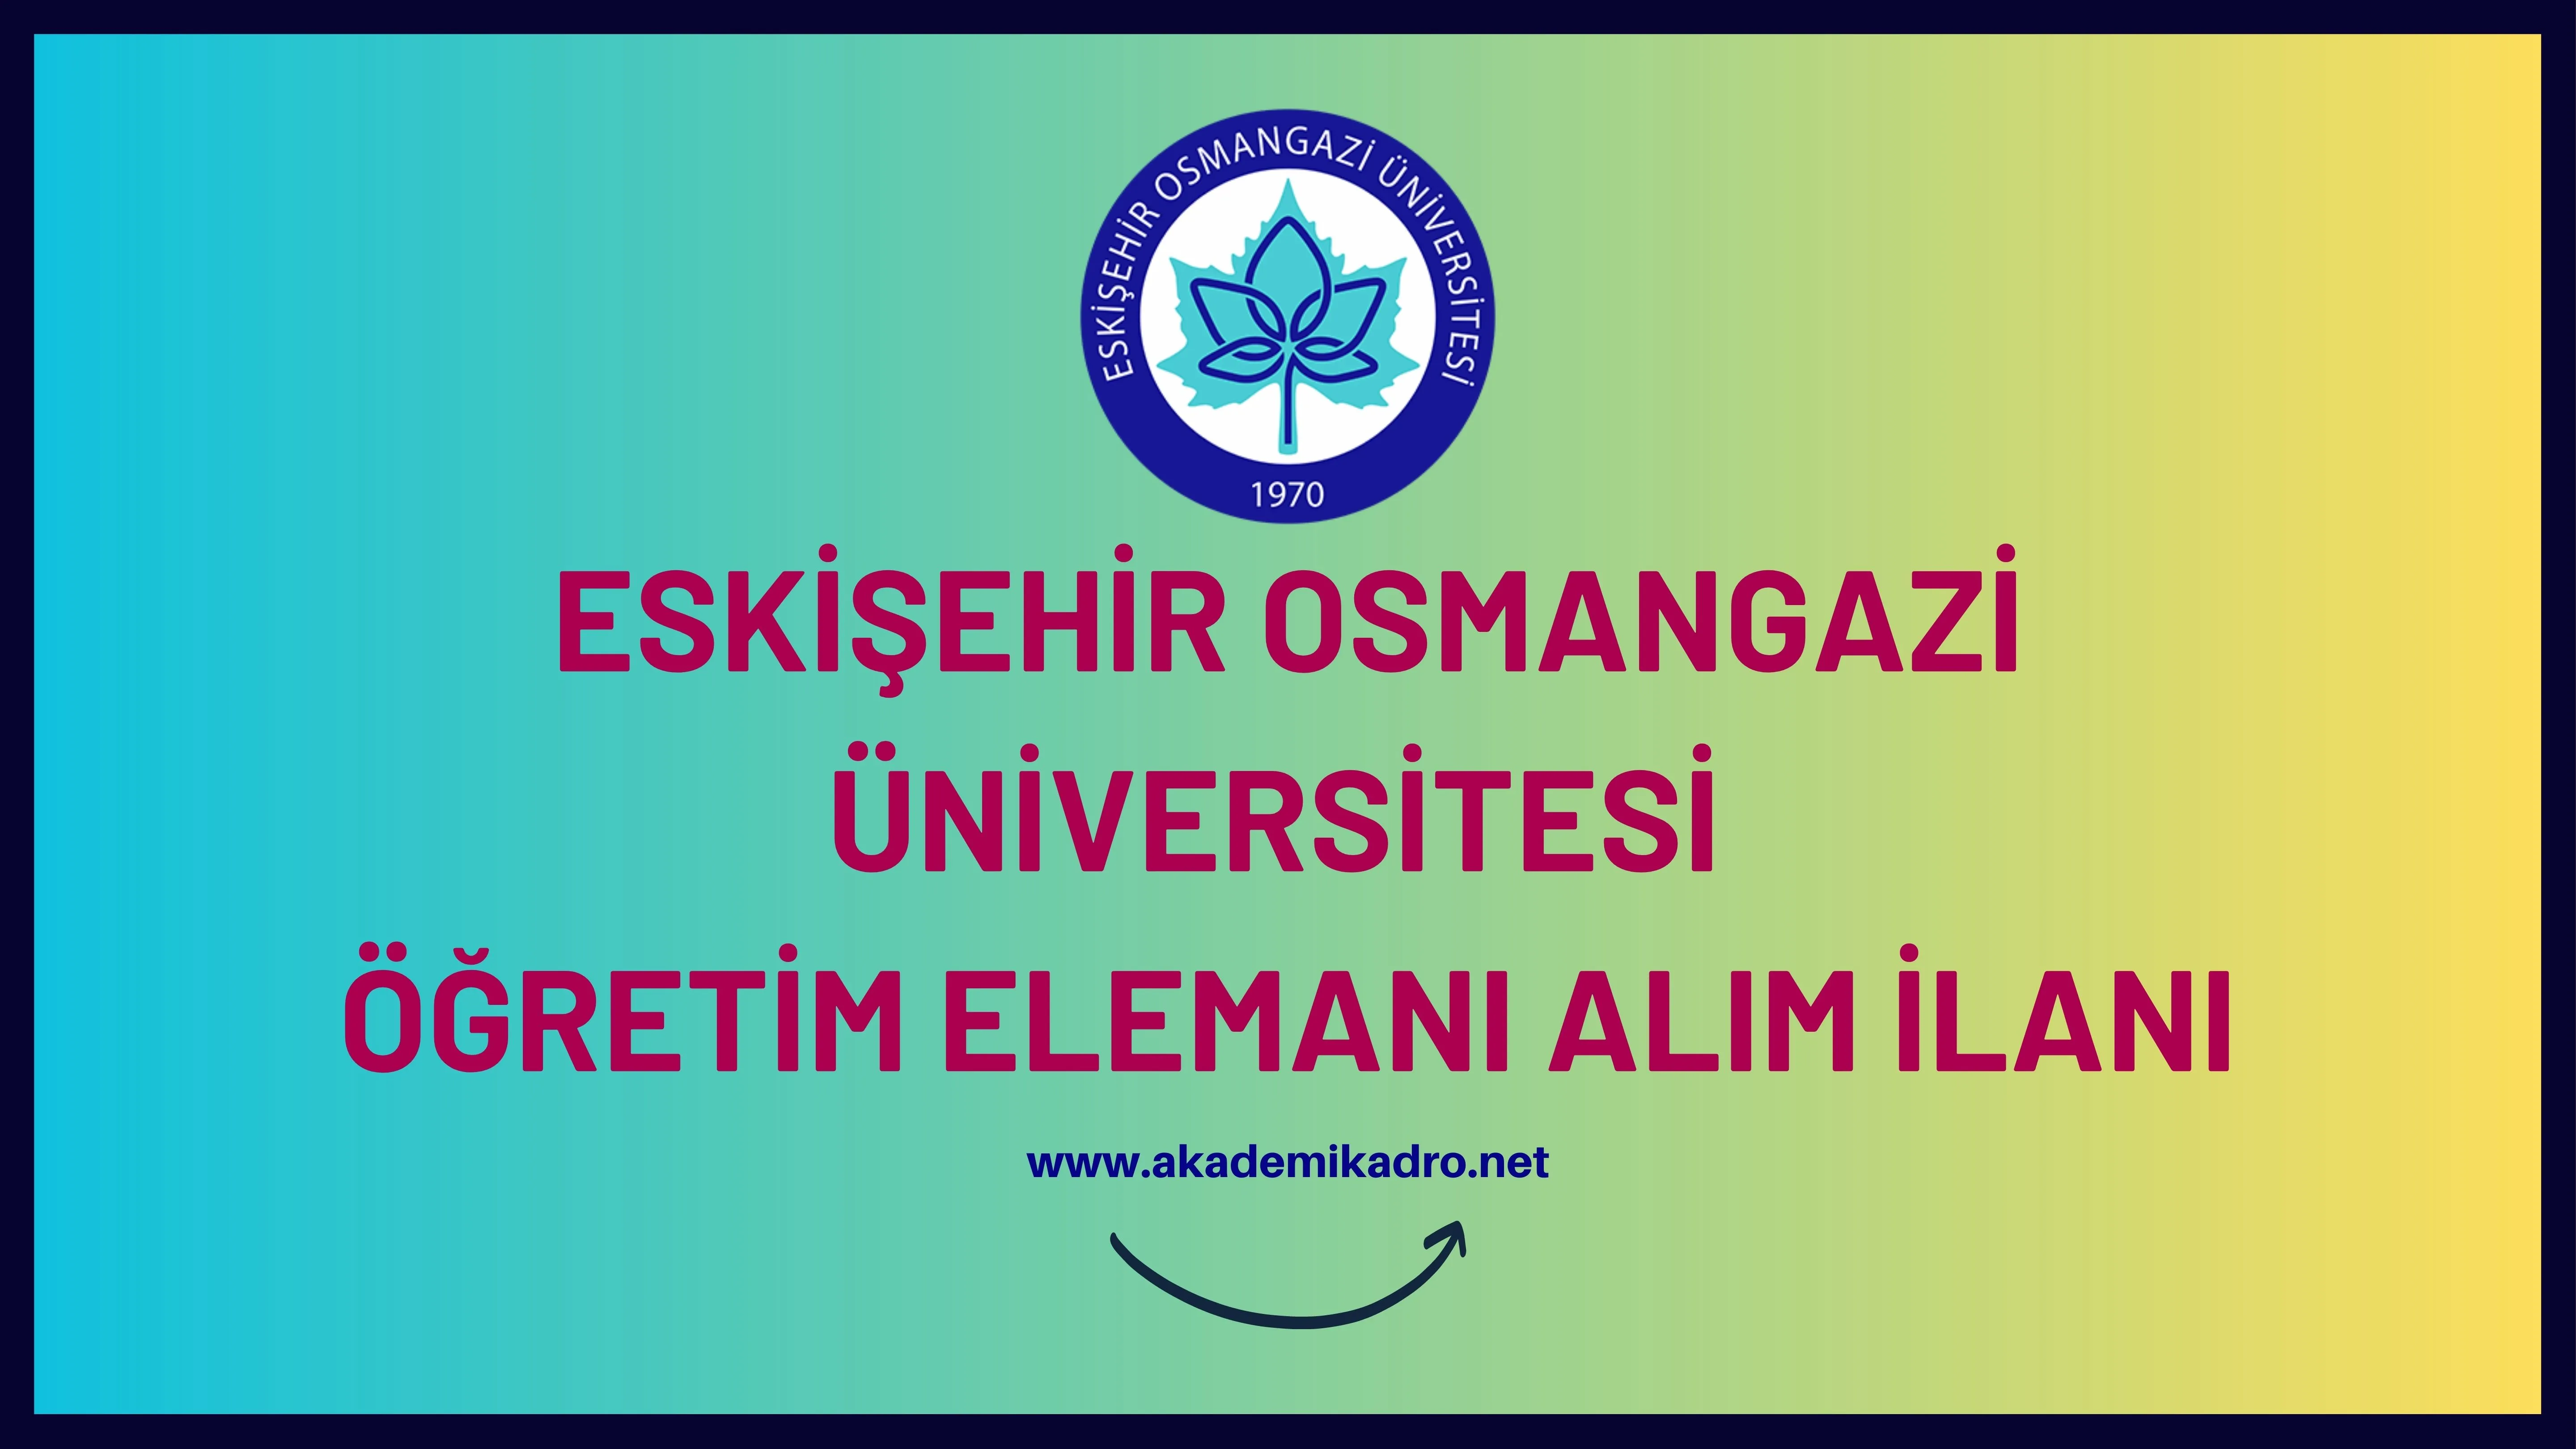 Eskişehir Osmangazi Üniversitesi 59 öğretim üyesi, 12 Araştırma görevlisi ve 4 öğretim görevlisi alacaktır.